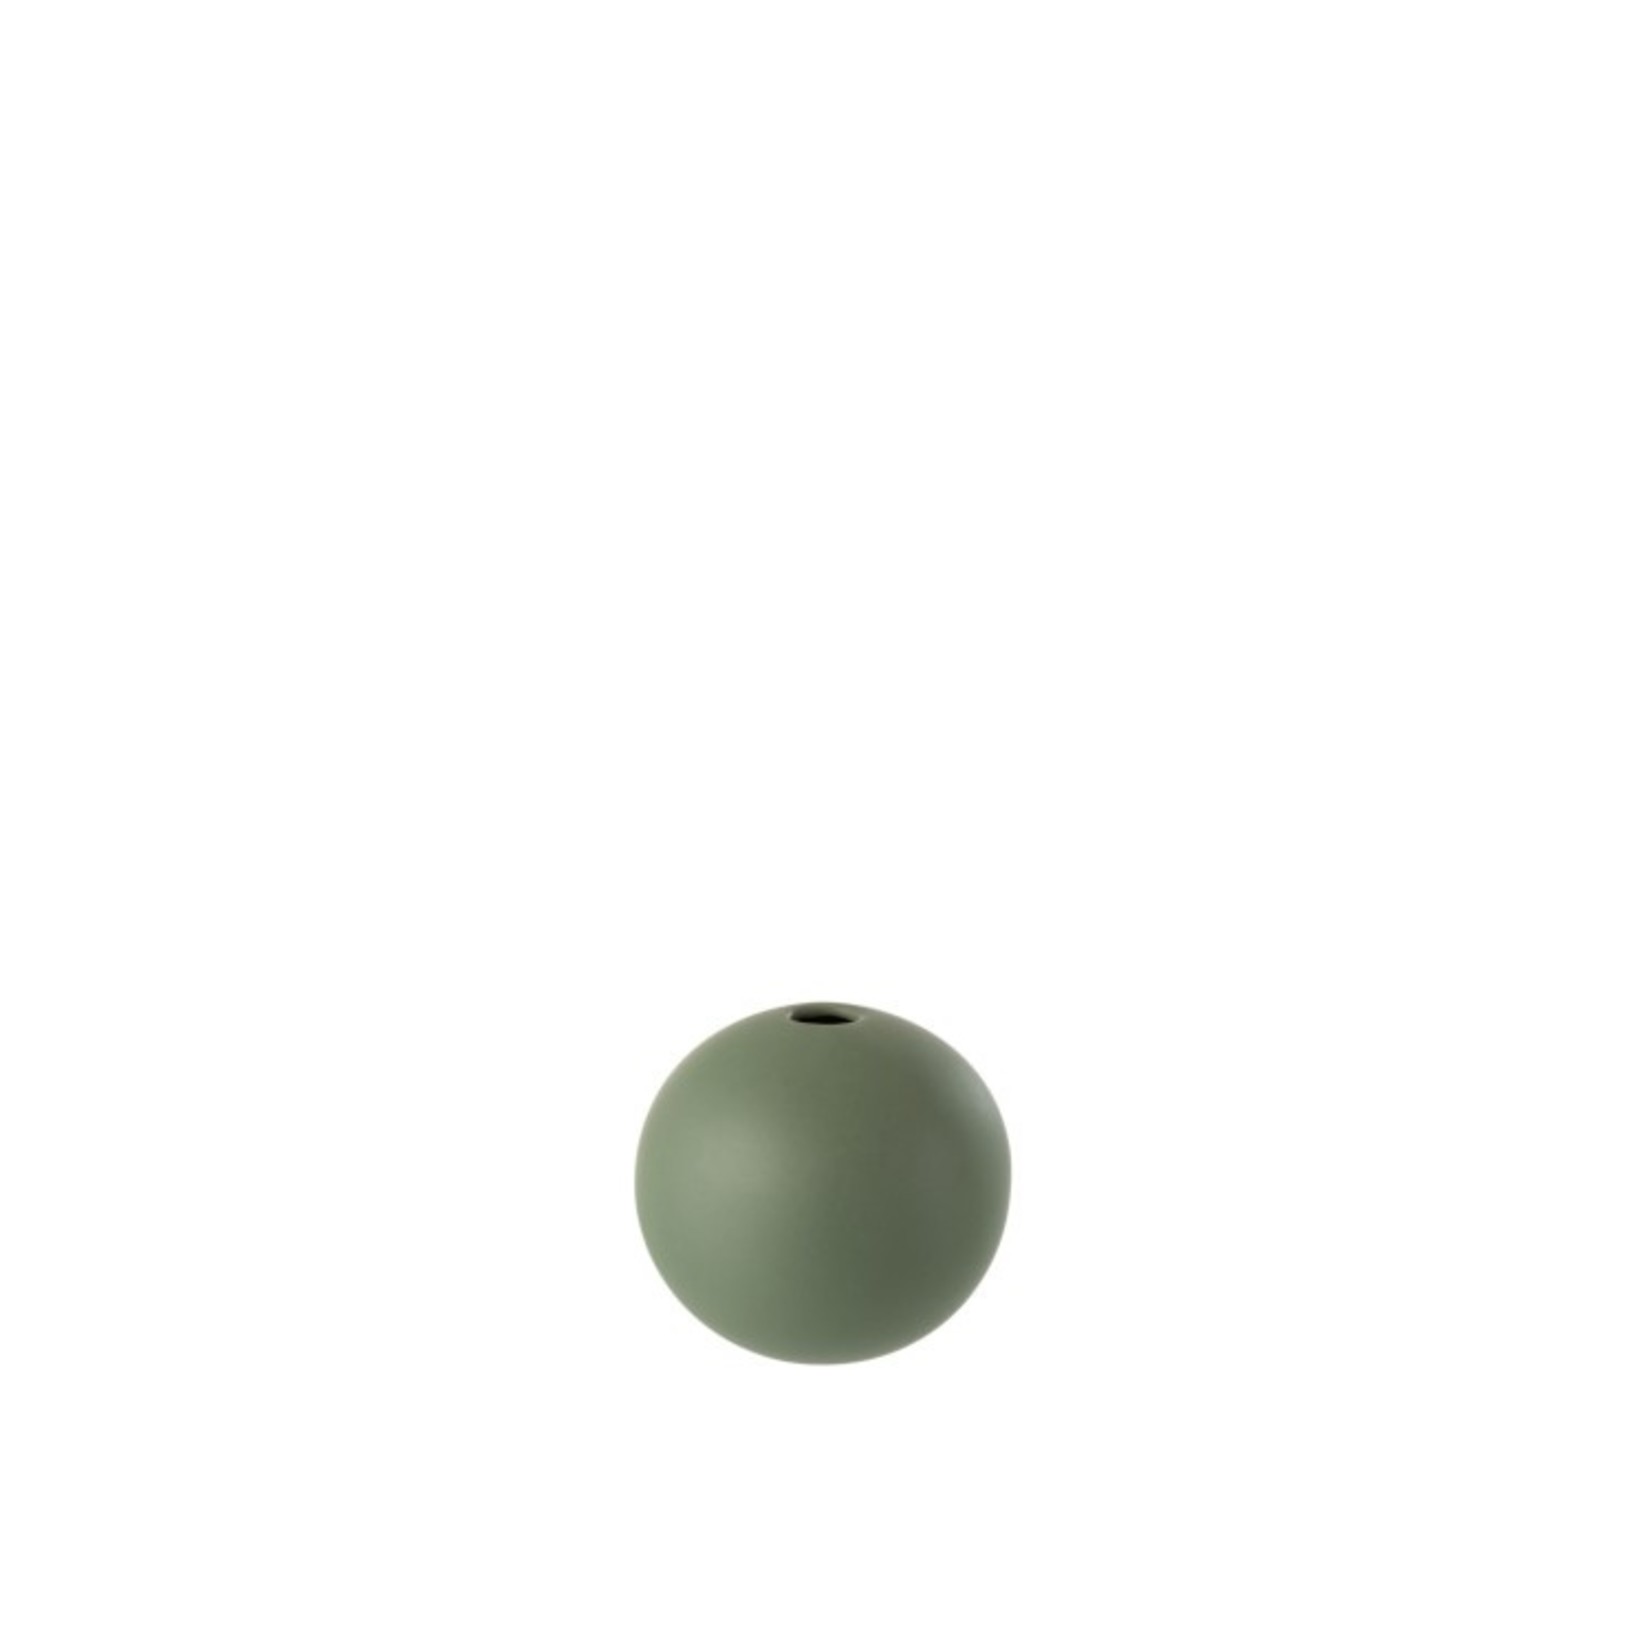 J-Line Vase Ball Ceramic Pastel Matt Green - Small